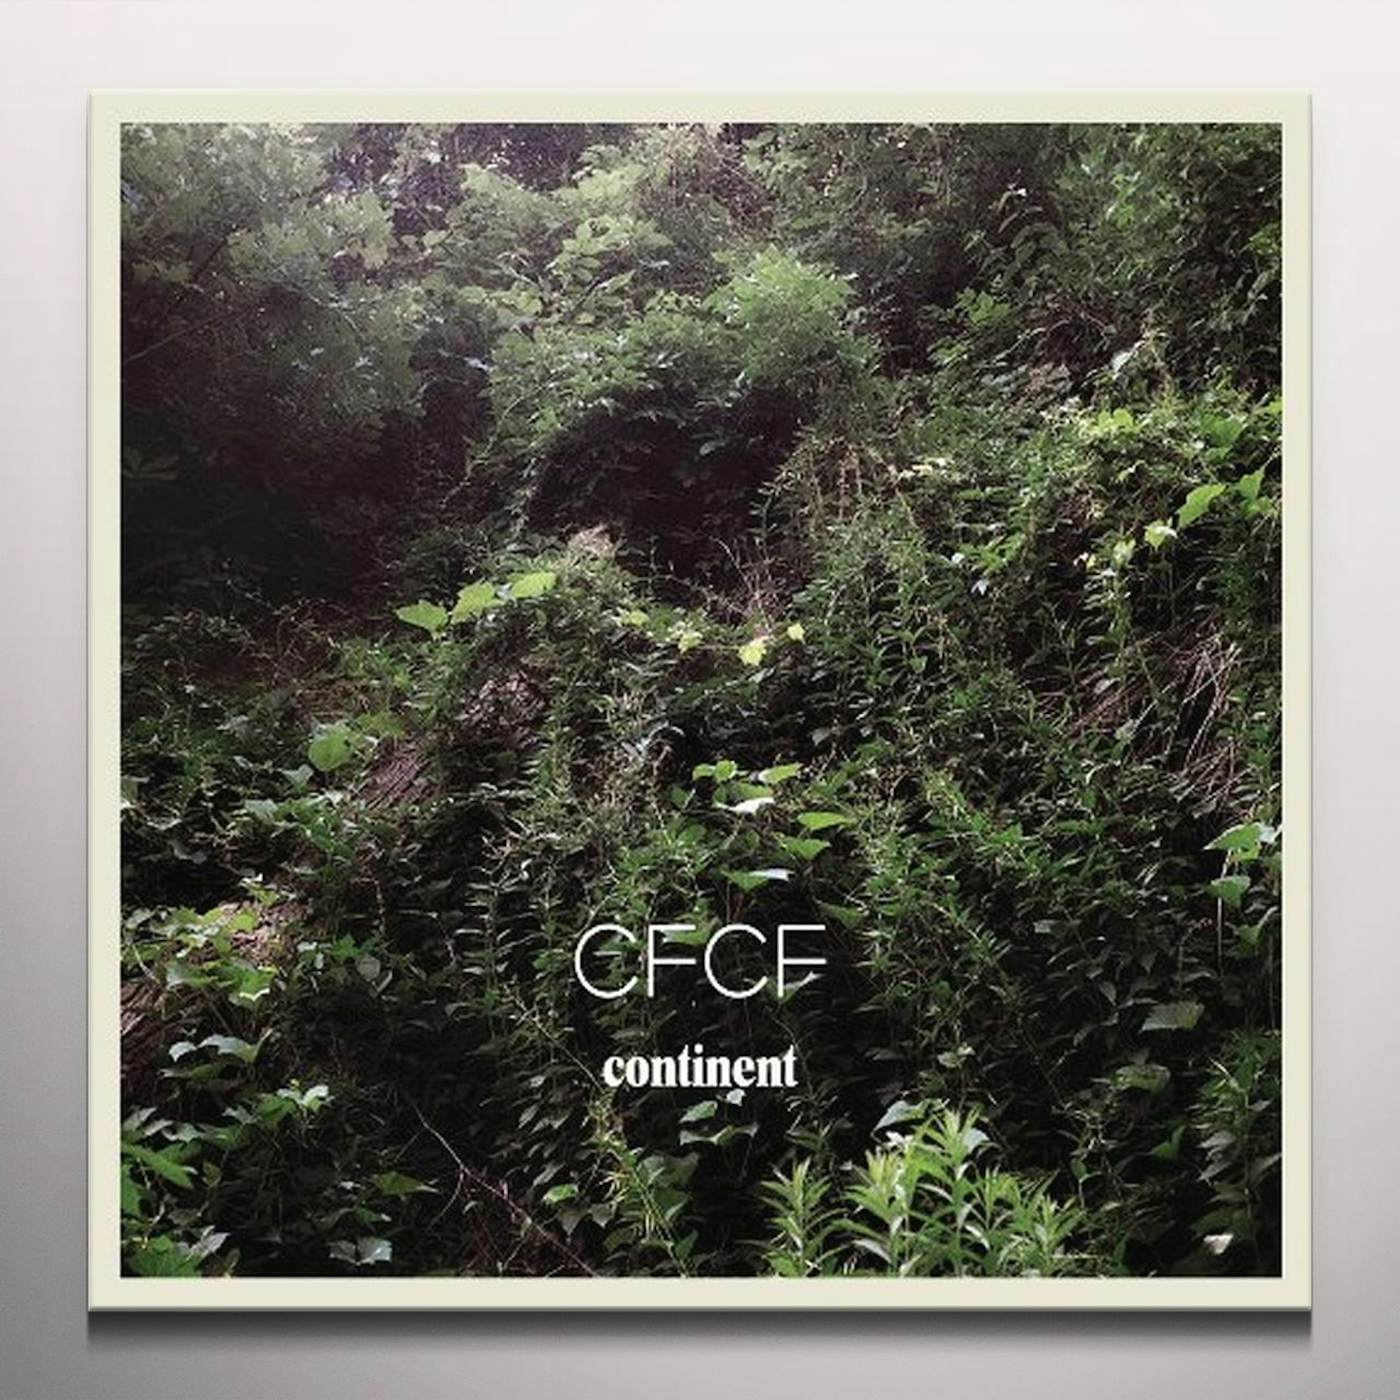 CFCF Continent Vinyl Record